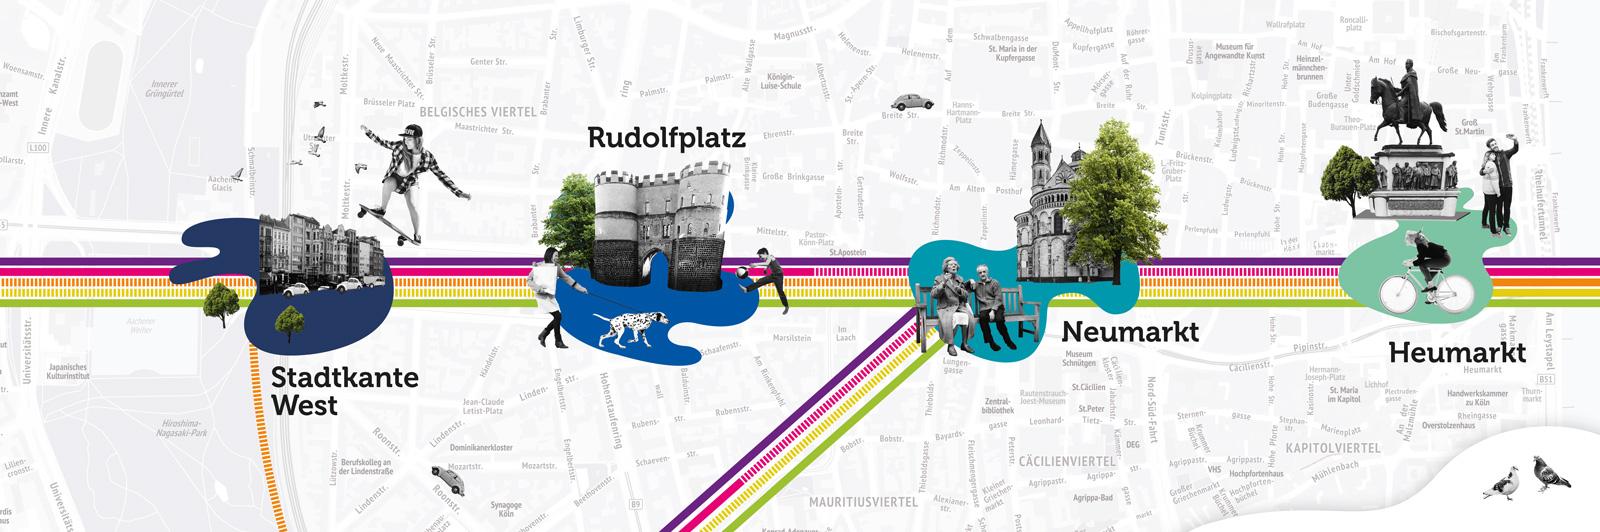 Die 4 betroffenen Haltestellen:Stadtkante West, Rudolfplatz, Neumarkt, Heumarkt